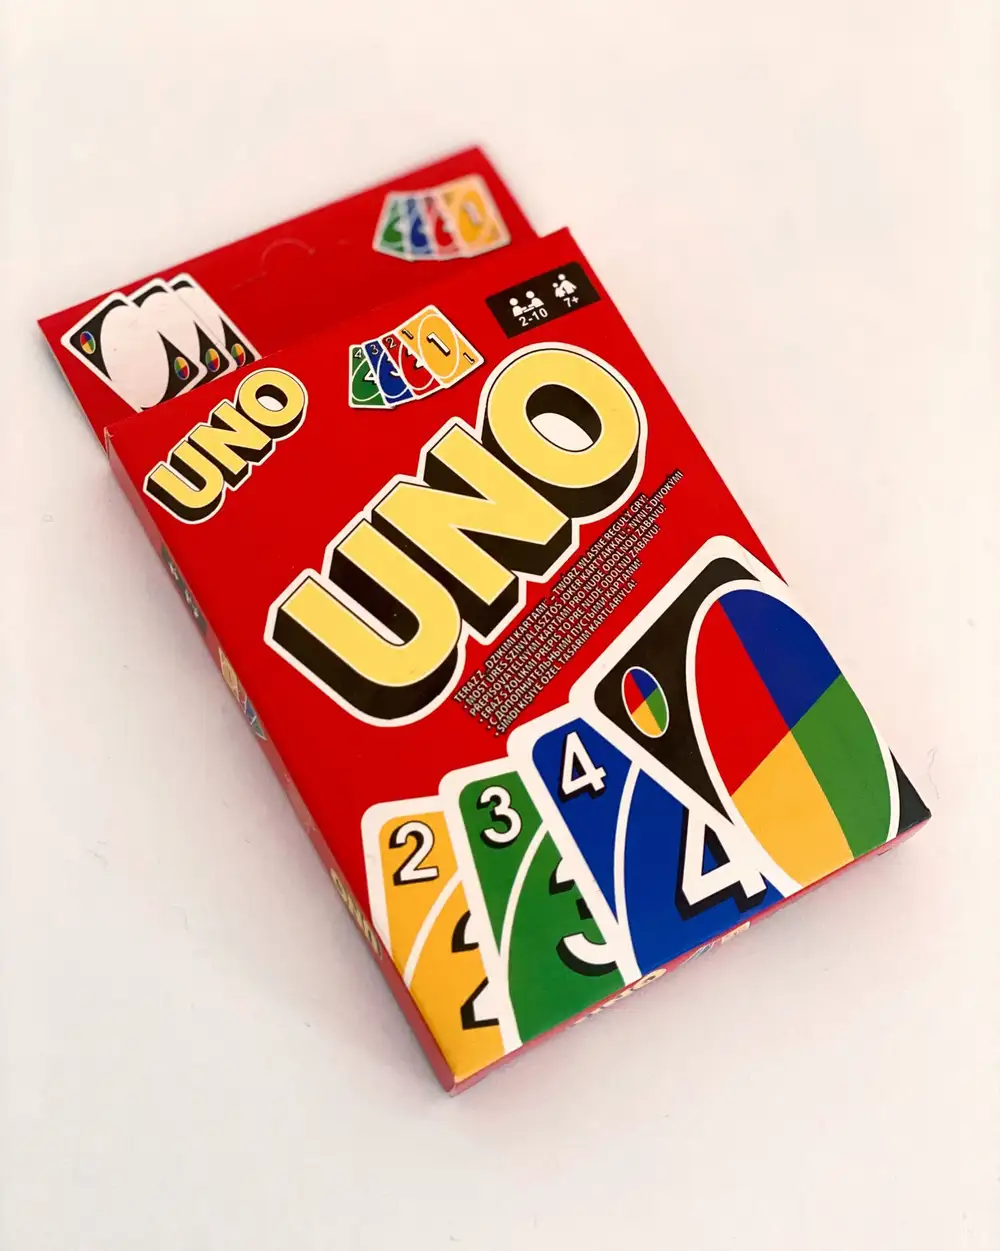 UNO Oyun Kartları - Kart Oyunu